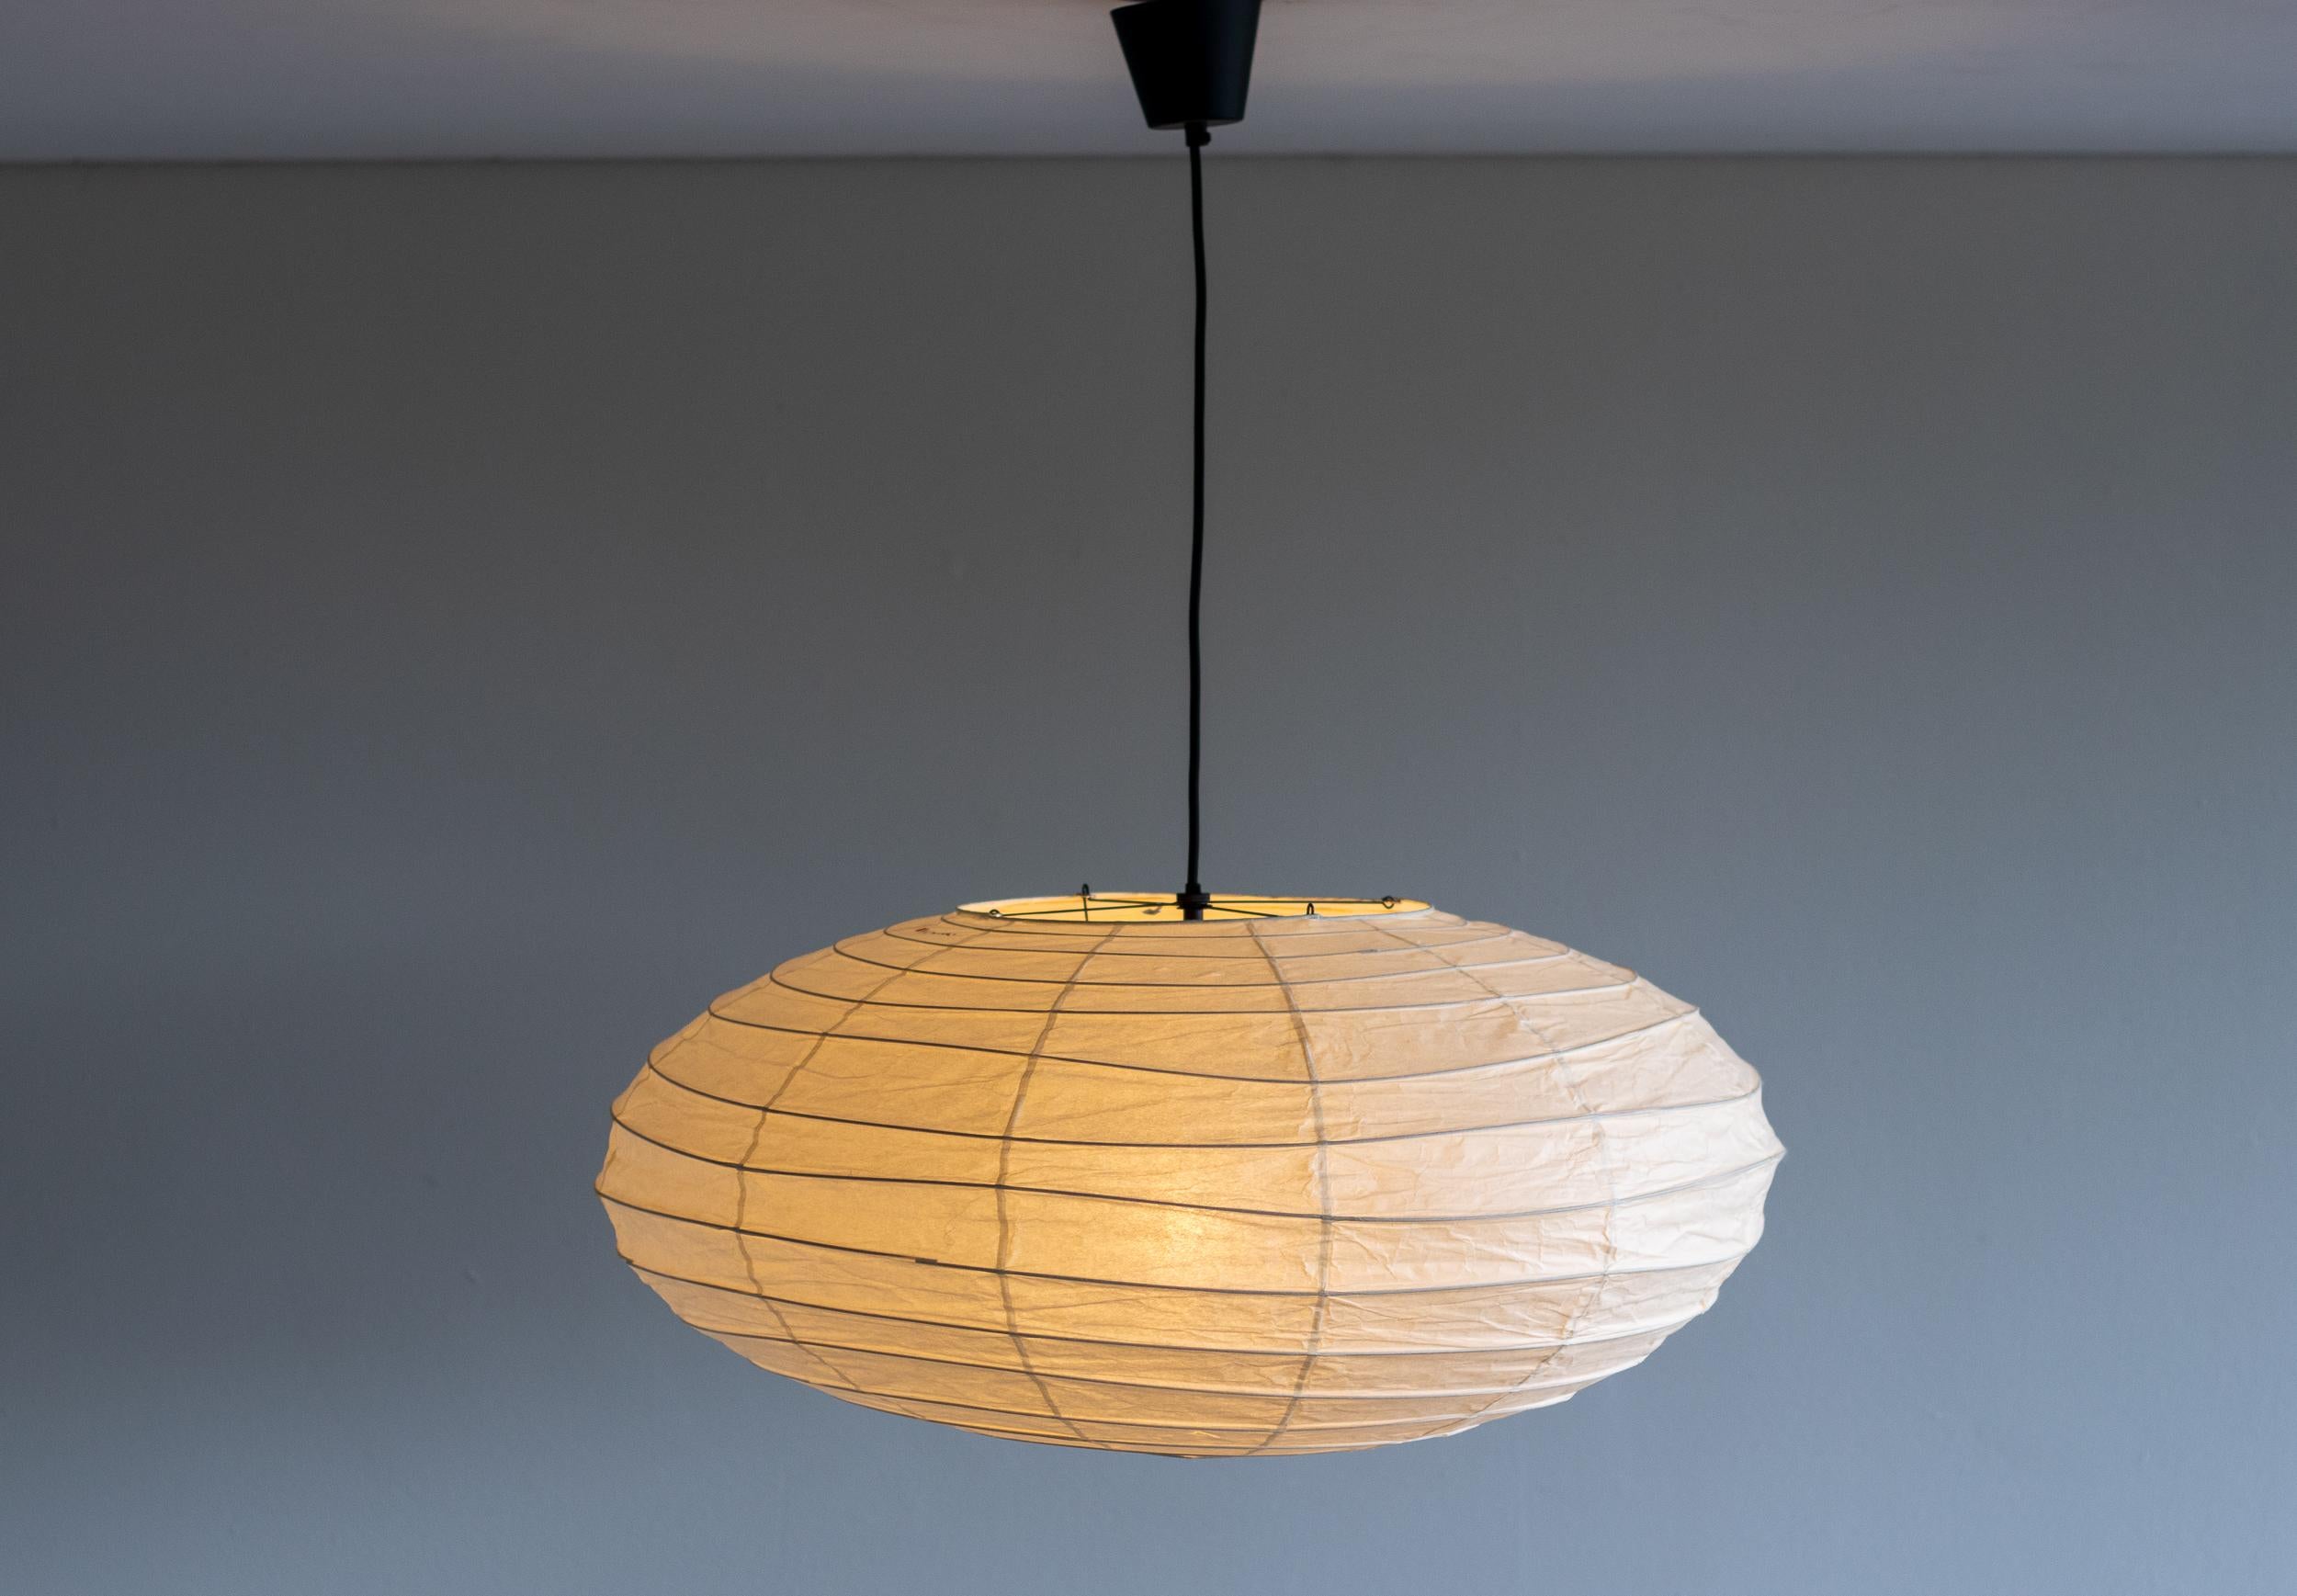 Lampe Akari 70EN, entworfen von Isamu Noguchi, 1951. Hergestellt von Ozeki & Co. in Japan. 
Bambu-Struktur mit Washi-Papier überzogen. Neu verdrahtet für US-Standards. 
Neue Kordel und Baldachin vom Noguchi-Museum. 
Diese Leuchte hat eine Steckdose.